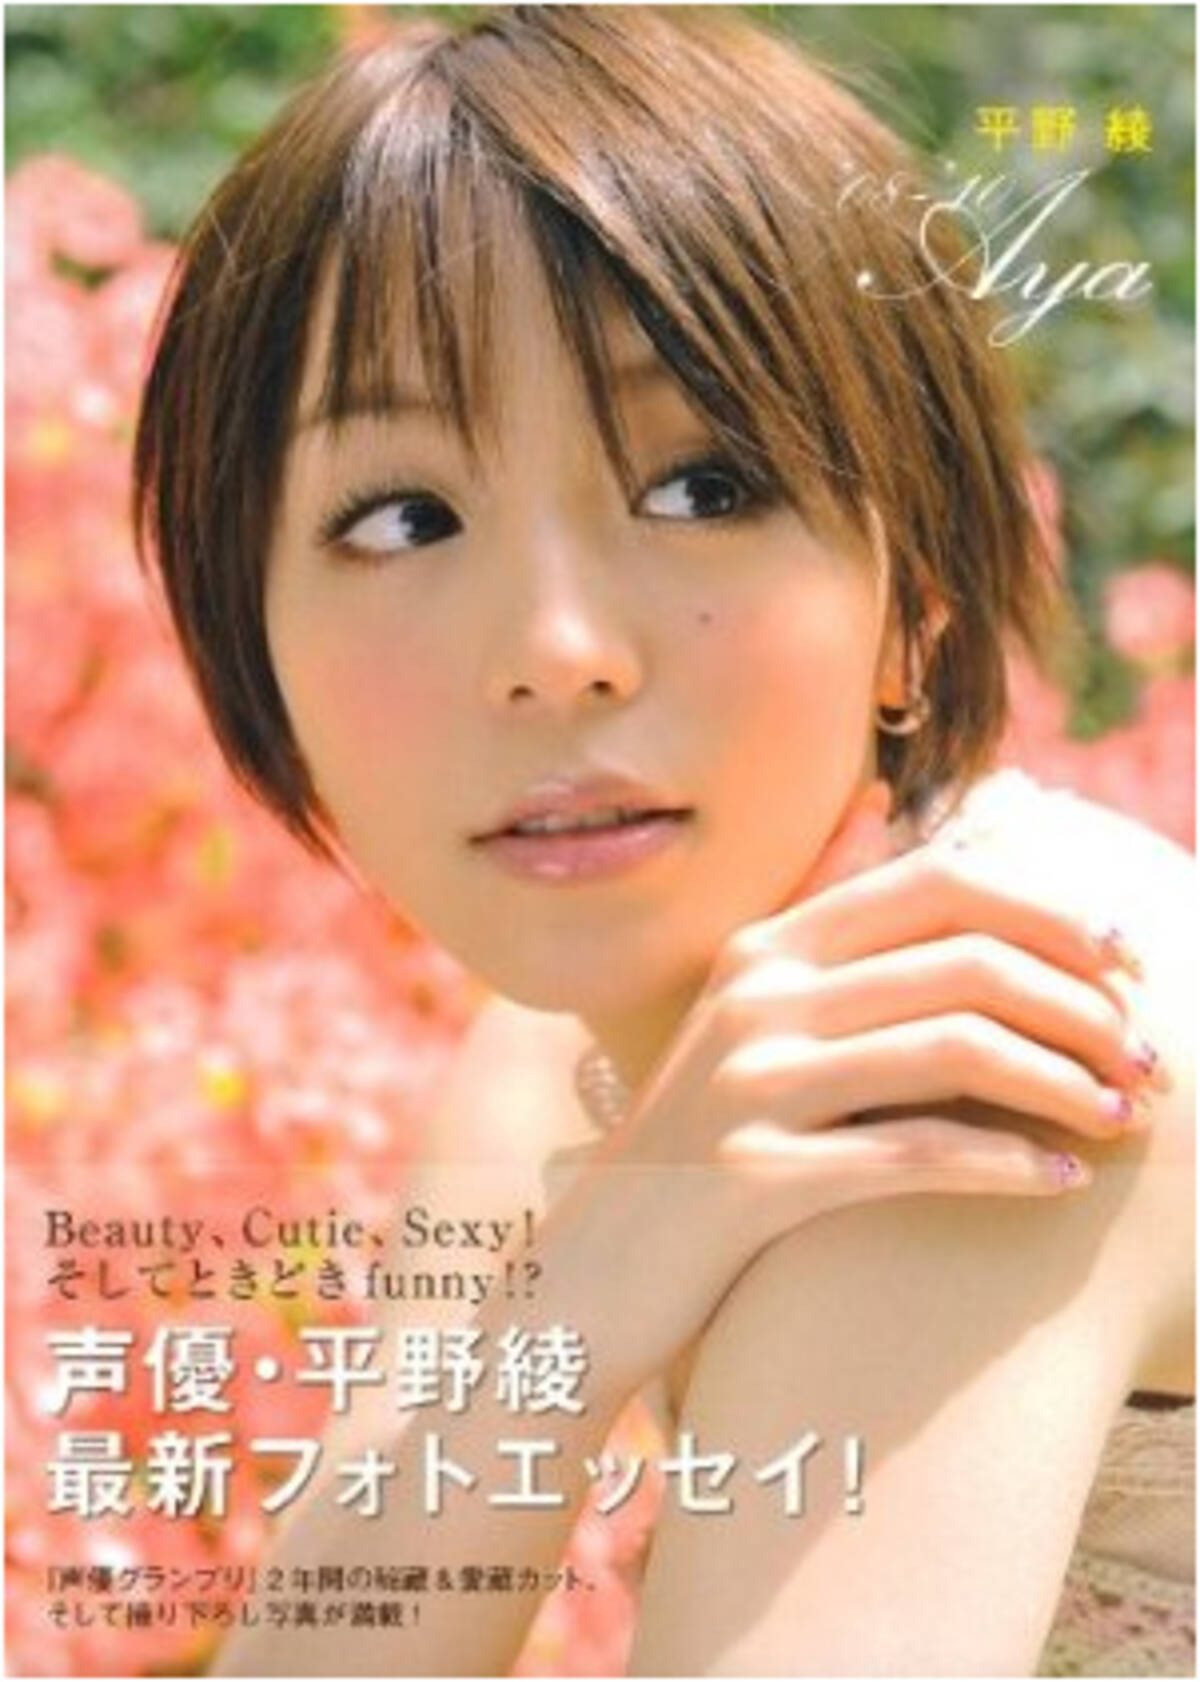 超絶人気声優アイドル平野綾がグータンヌーボに出演した際の視聴率は8 4 と今期最低 10年8月5日 エキサイトニュース